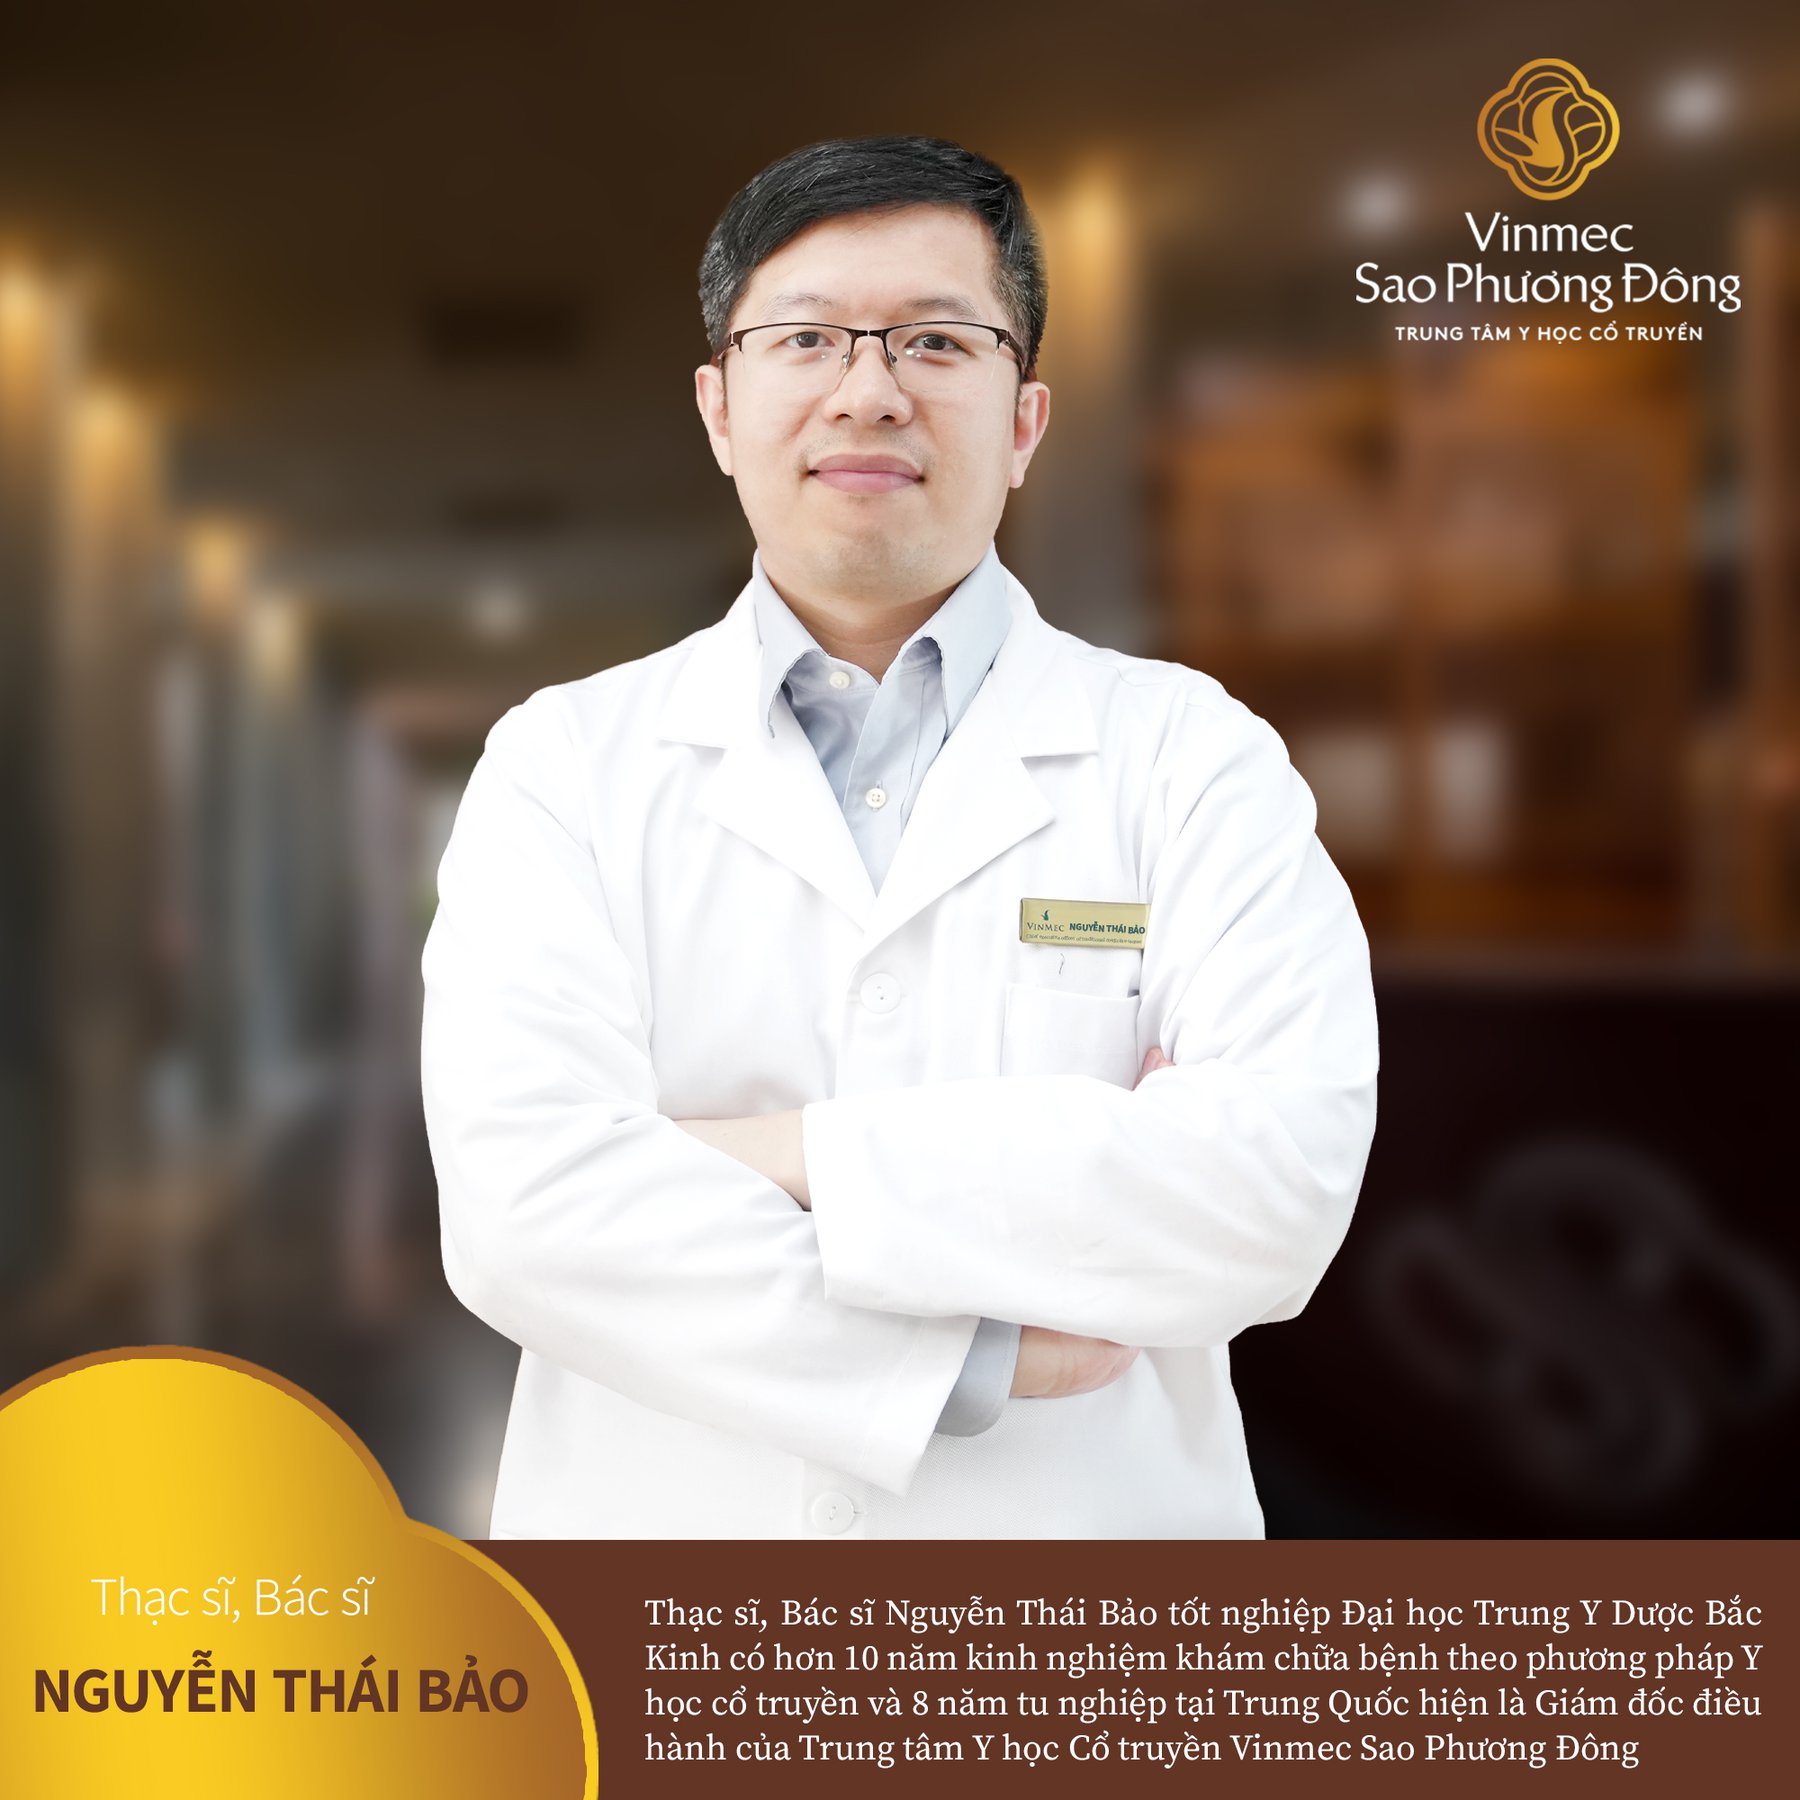 Bác sĩ Nguyễn Thái Bảo